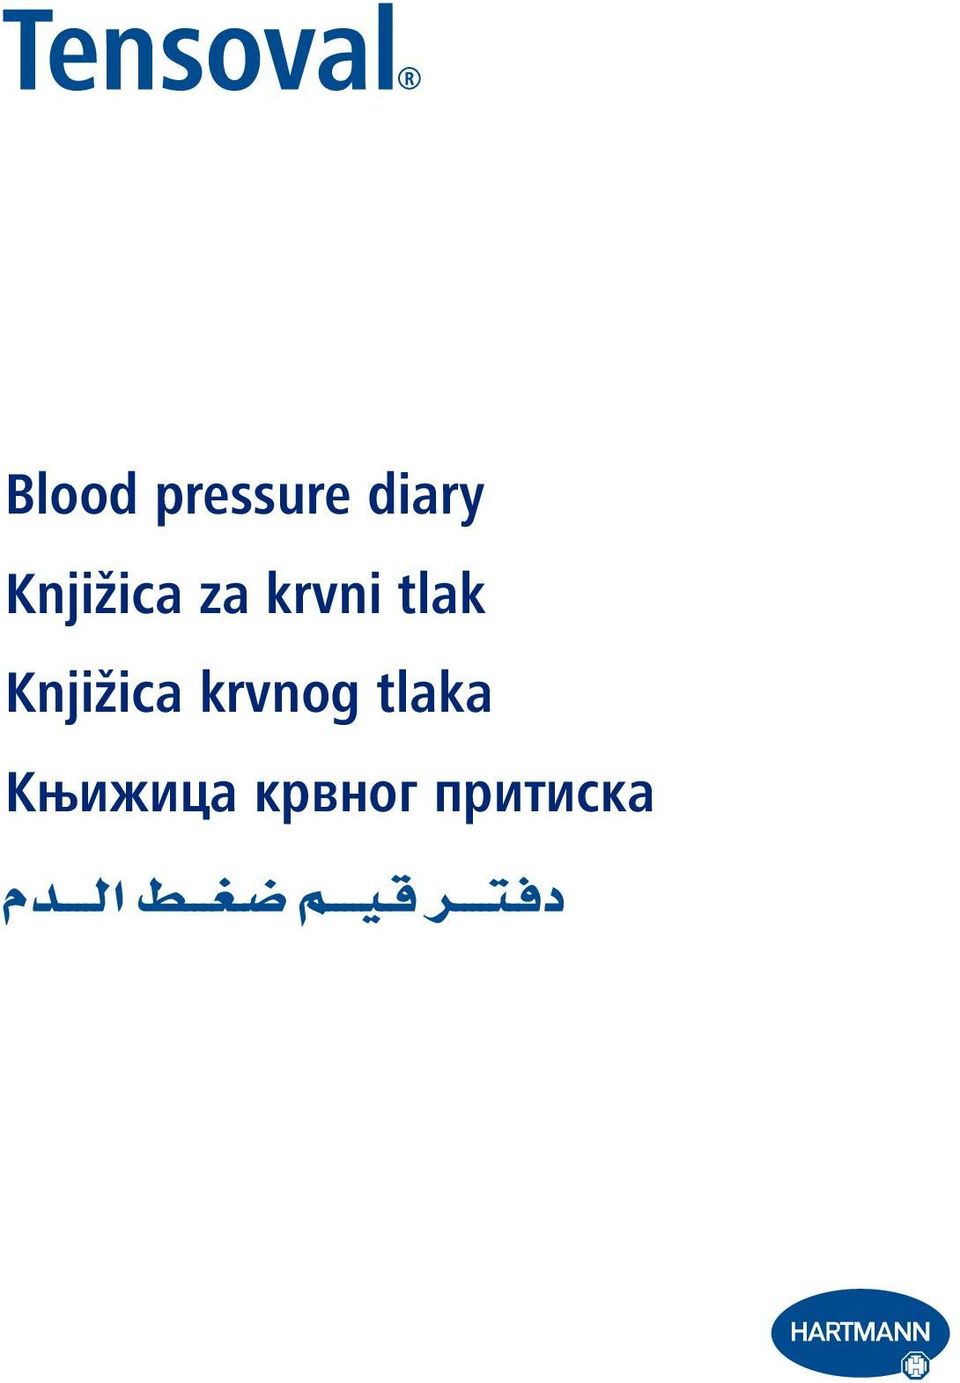 Knjižica krvnog tlaka